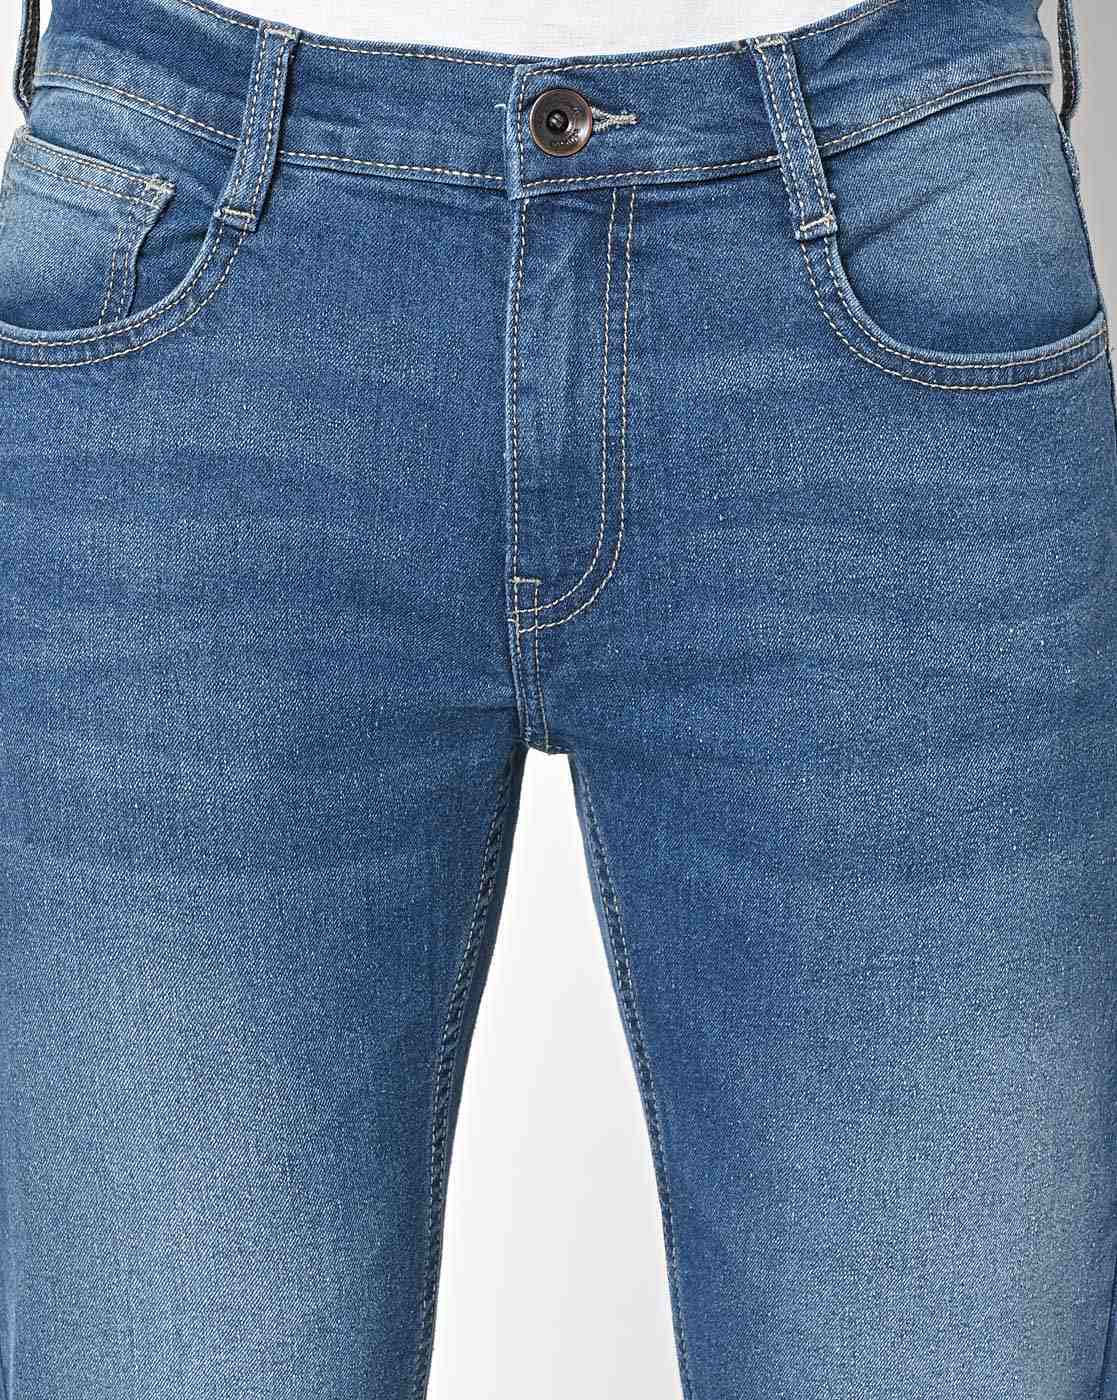 Slim Fit Original Pepe London Denims Jeans at Rs 635/piece in Visakhapatnam